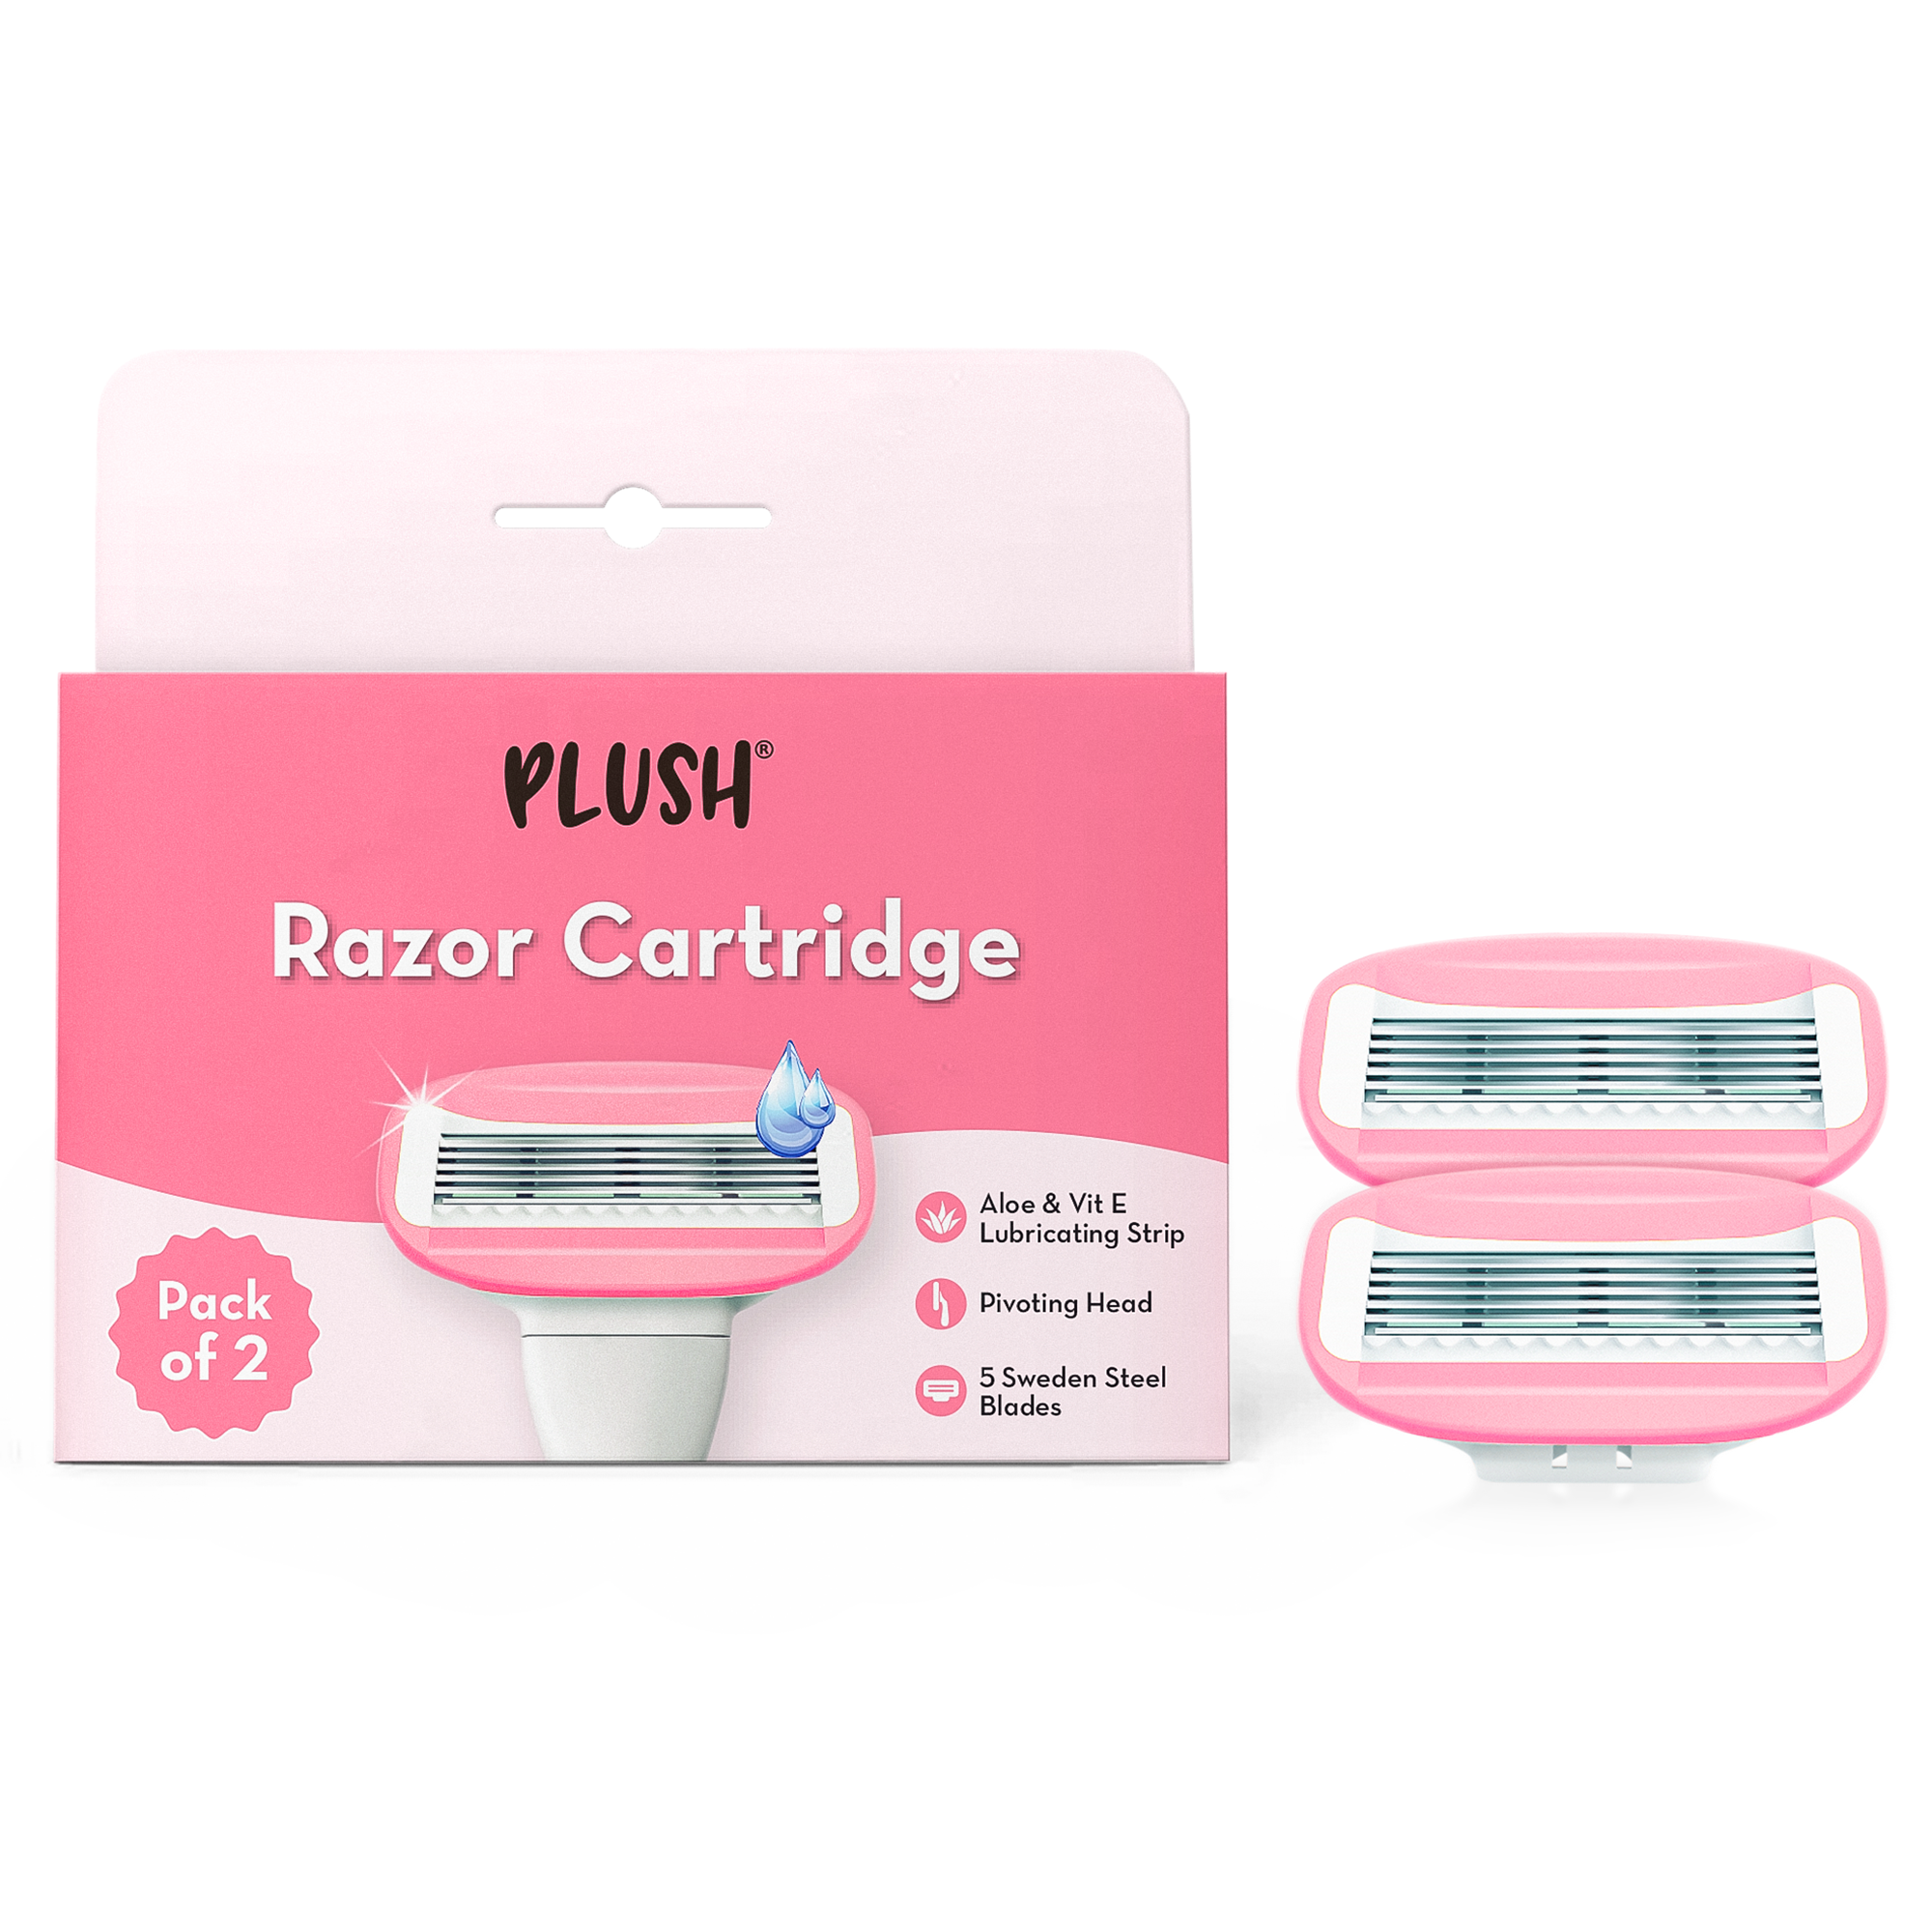 Pack of 2 Cartridges for Plush Razor